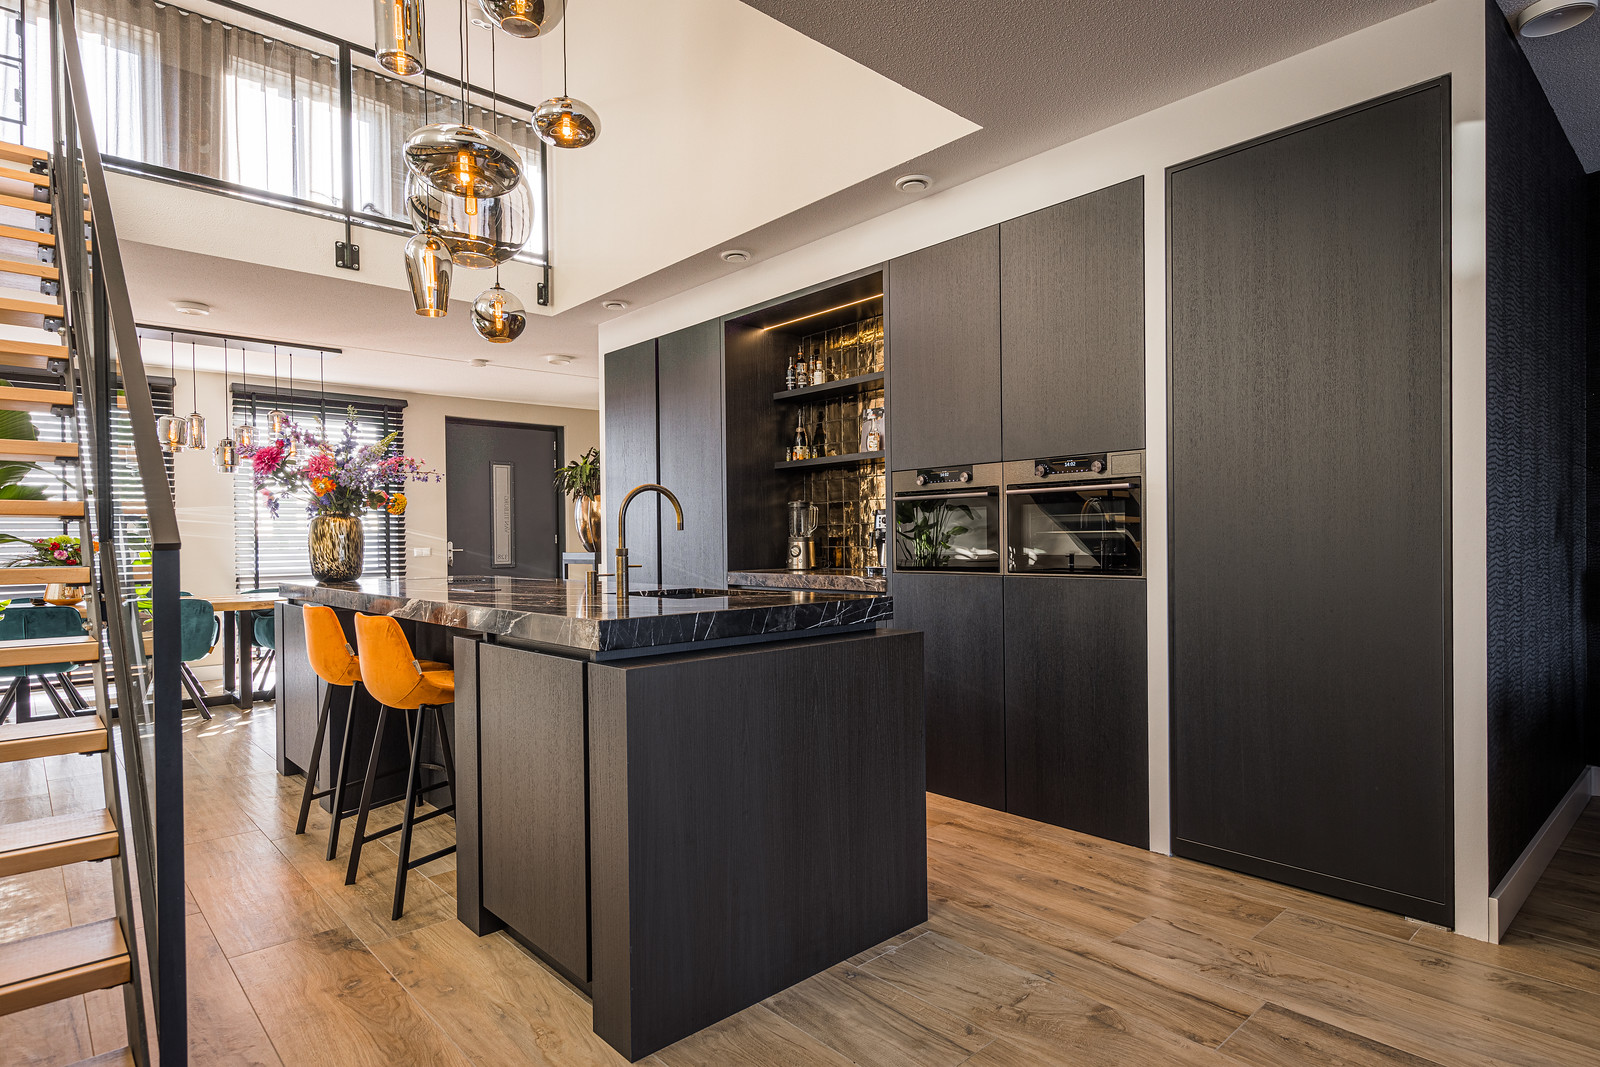 Moderne zwarte keuken met kastenwand en inbouwapparatuur